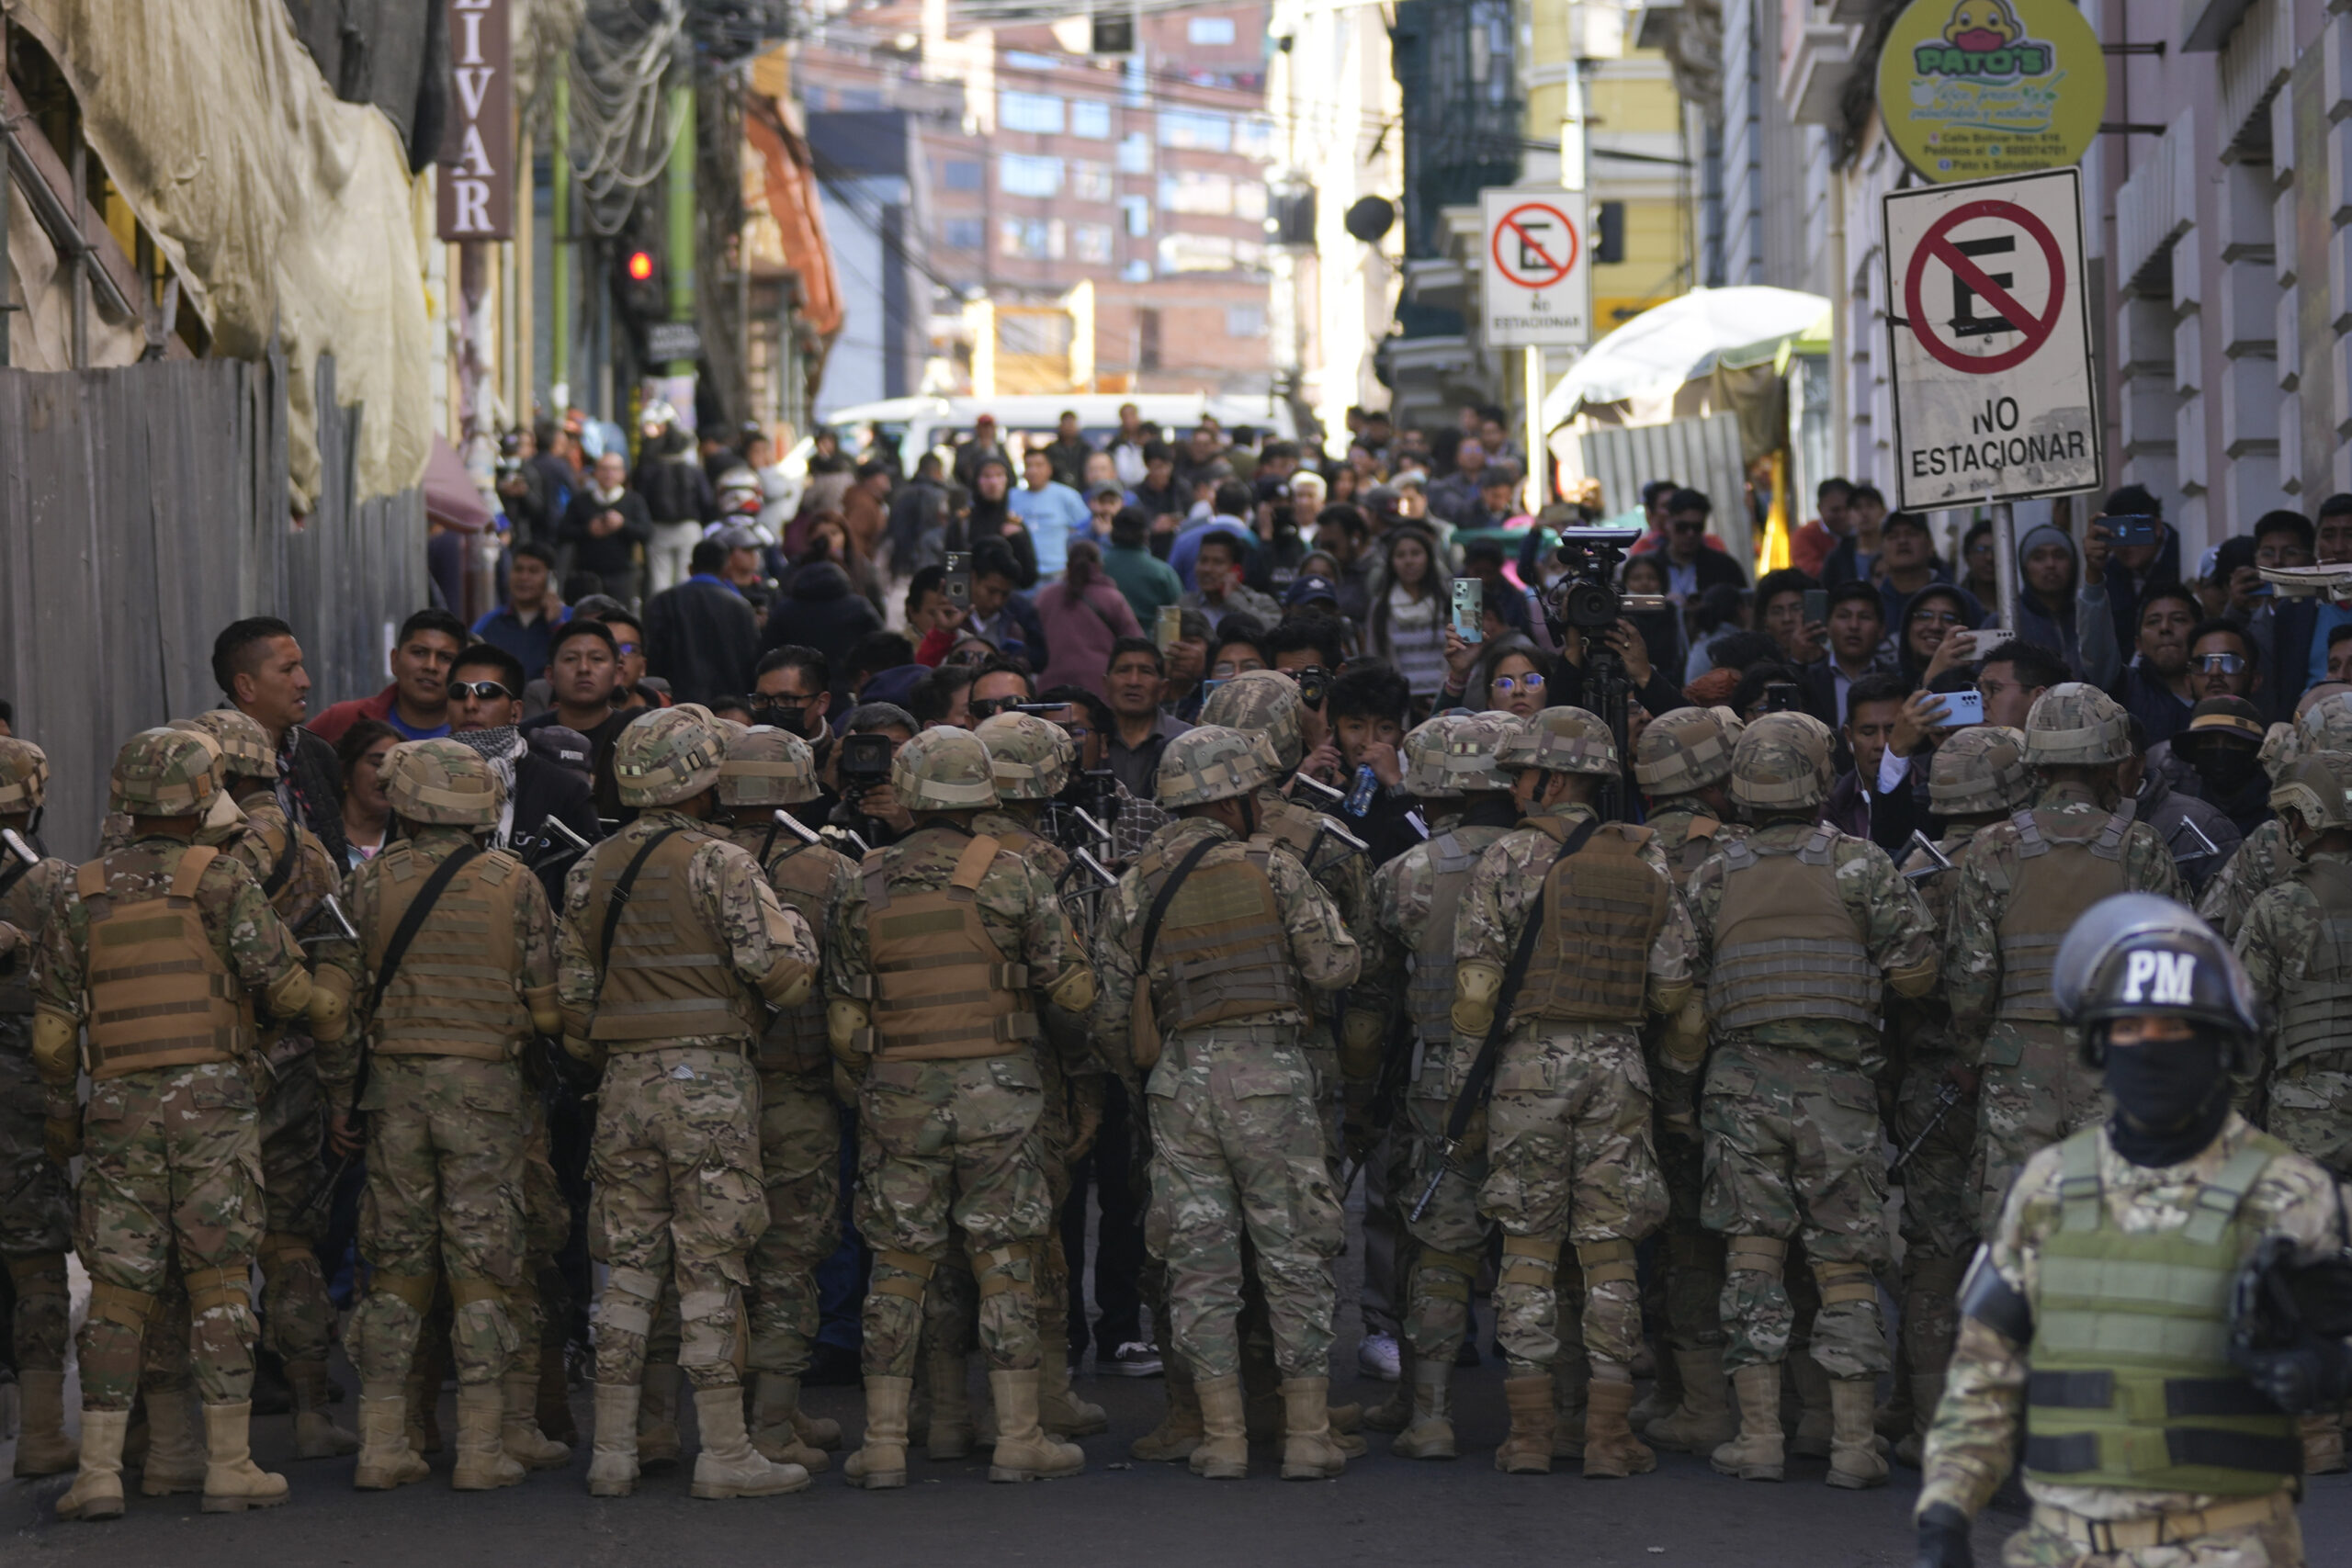 Militärpolizei blockiert den Zugang zur Plaza Murillo in La Paz. Der ehemalige General der bolivianischen Armee und Anführer eines Putschversuches, Zúñiga, ist festgenommen worden.